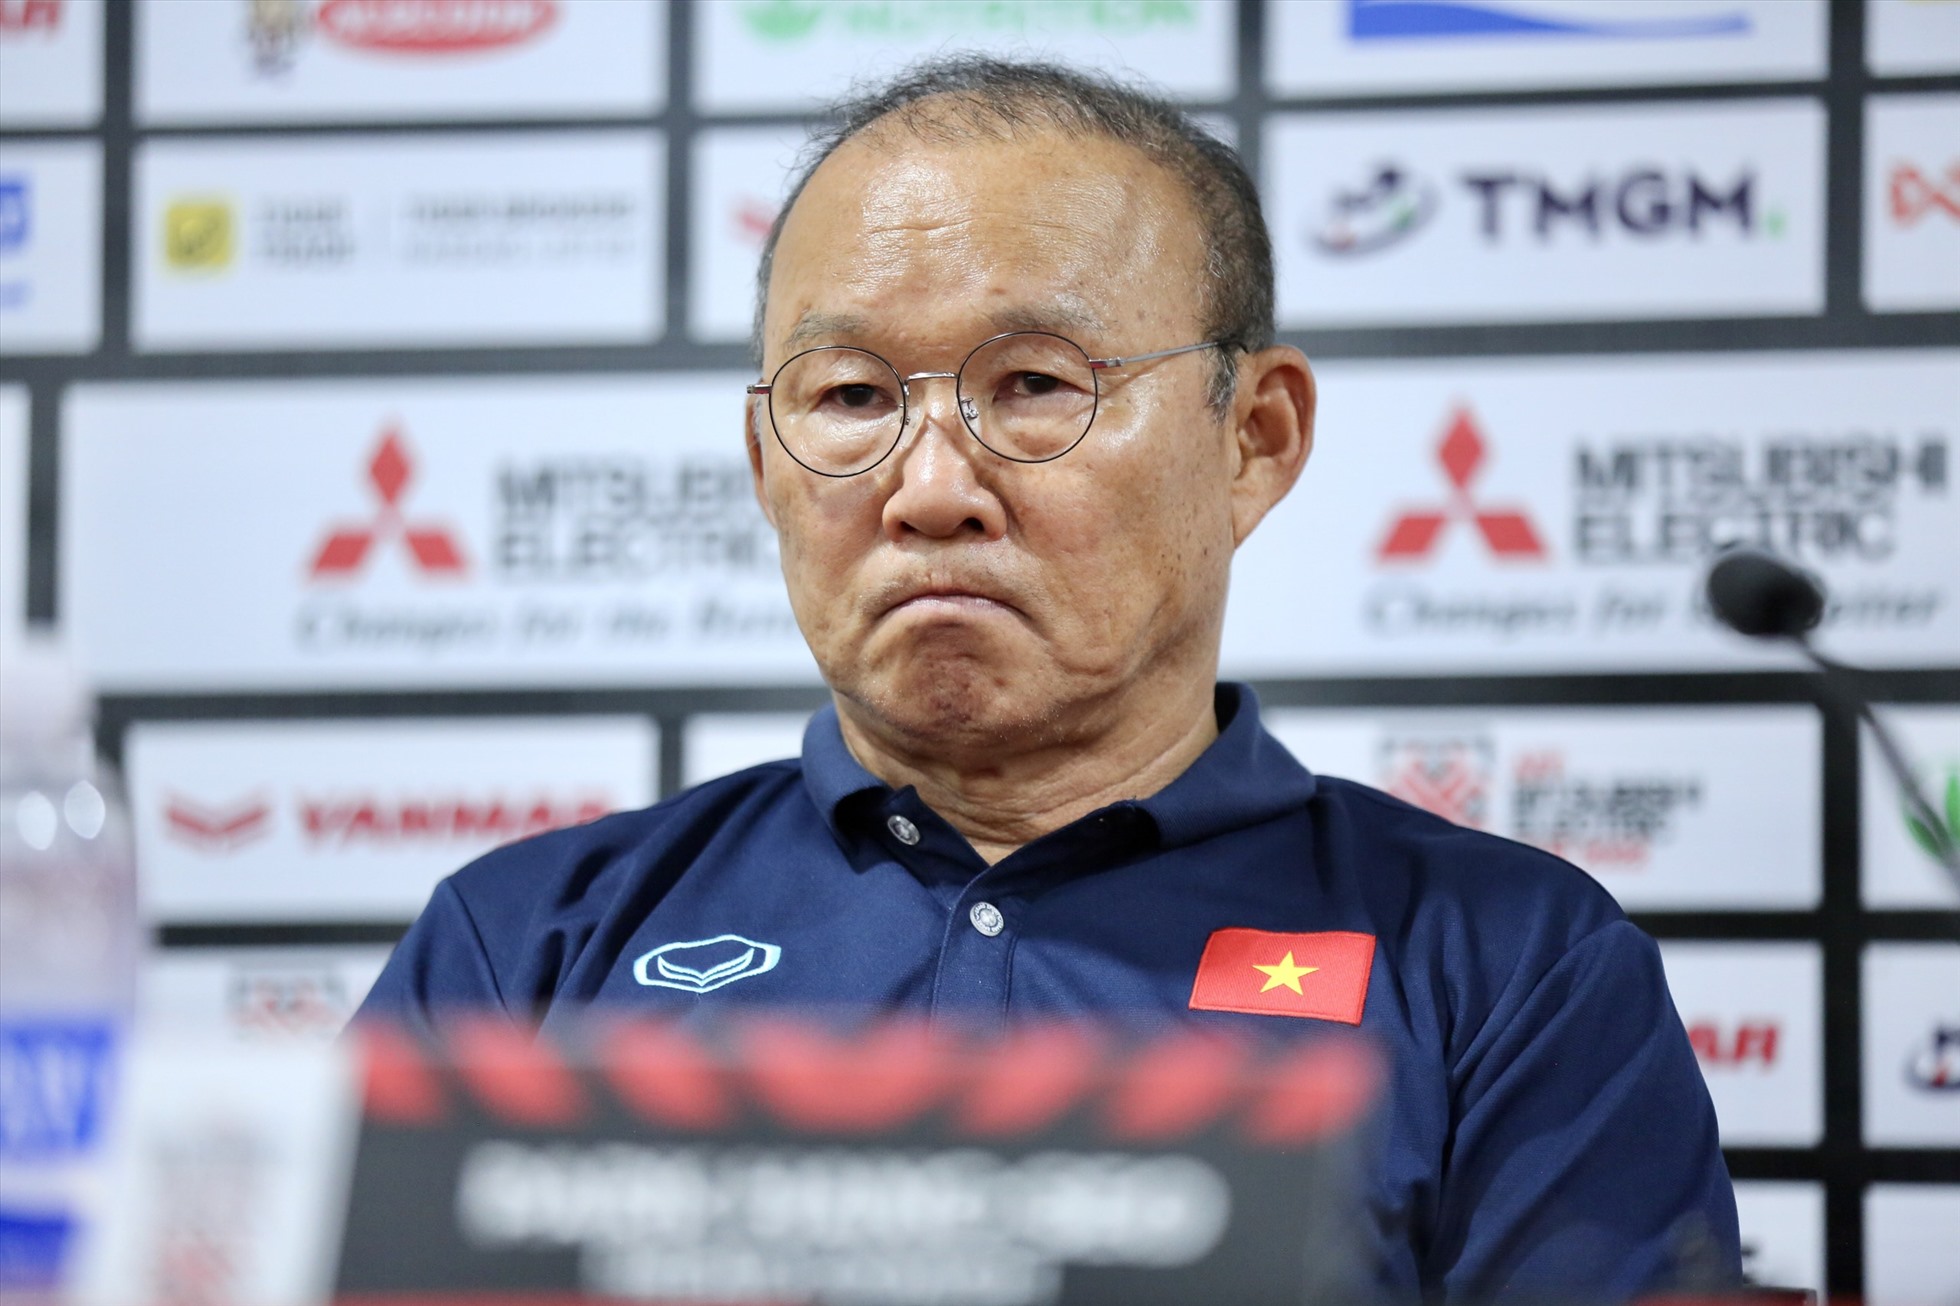 Huấn luyện viên Park Hang-seo không hài lòng về nước chủ nhà Singpore. Ảnh: Minh Dân